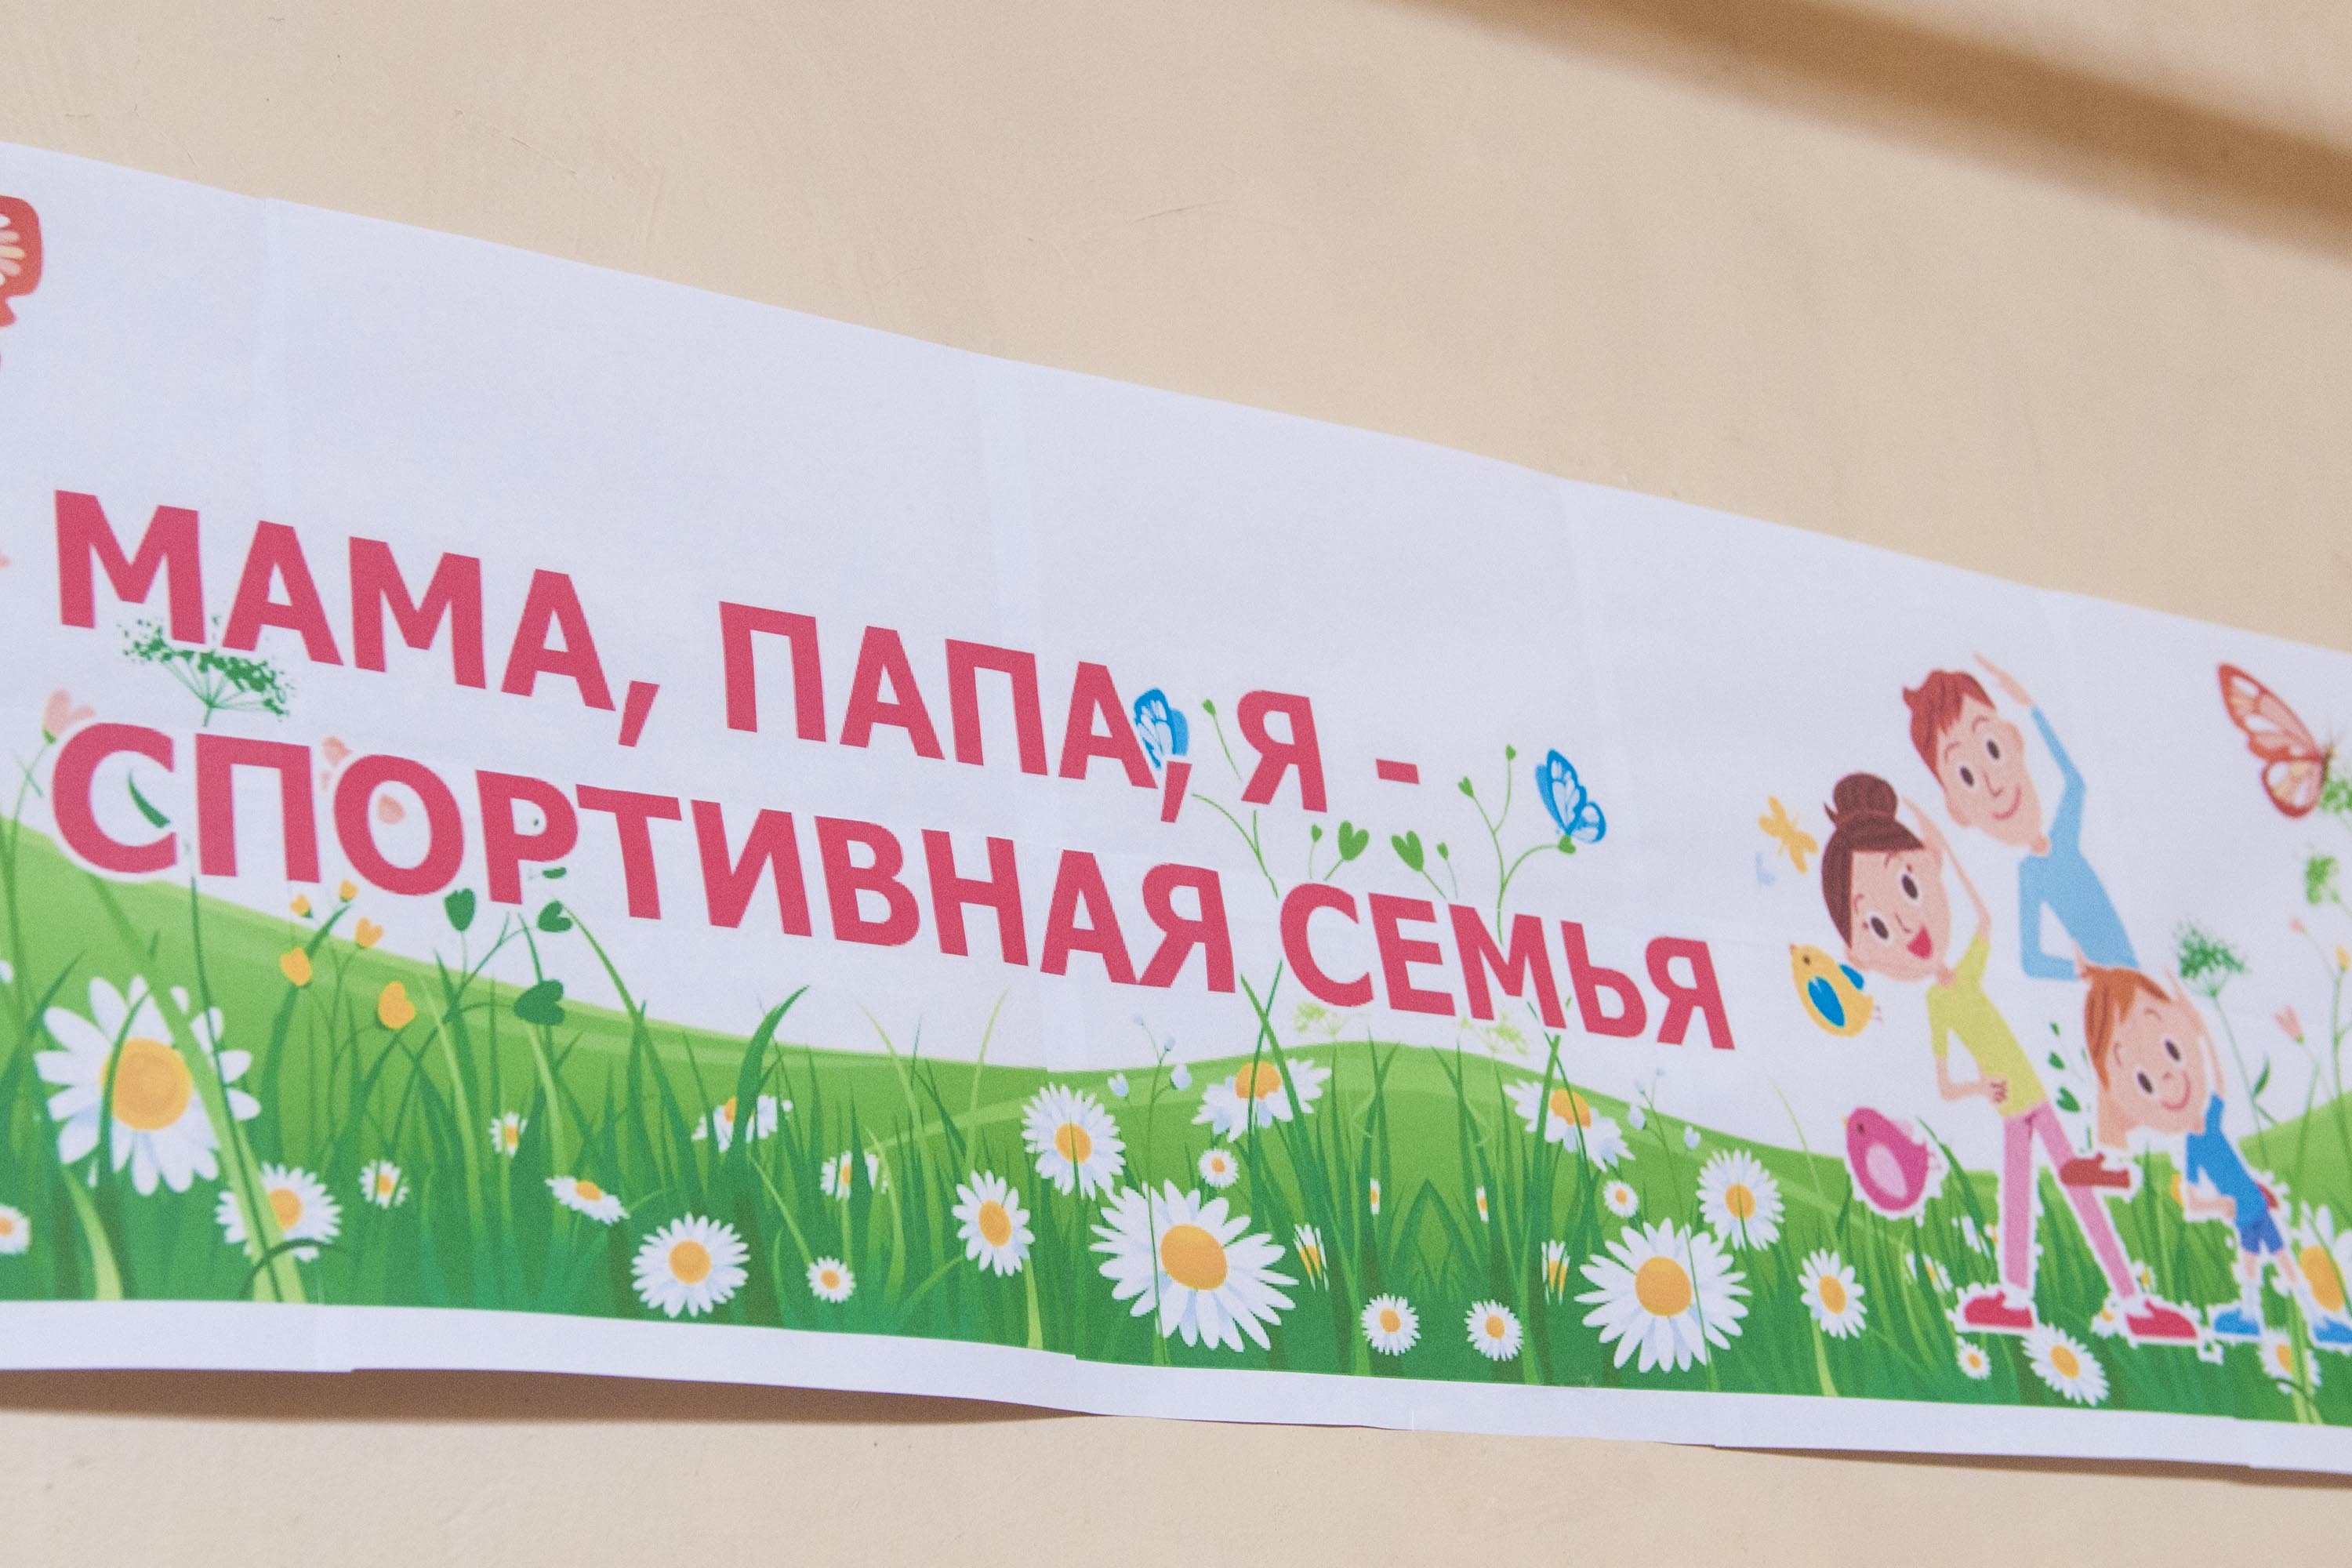 В Кузбасских школах родители вместе с детьми проводят субботний досуг